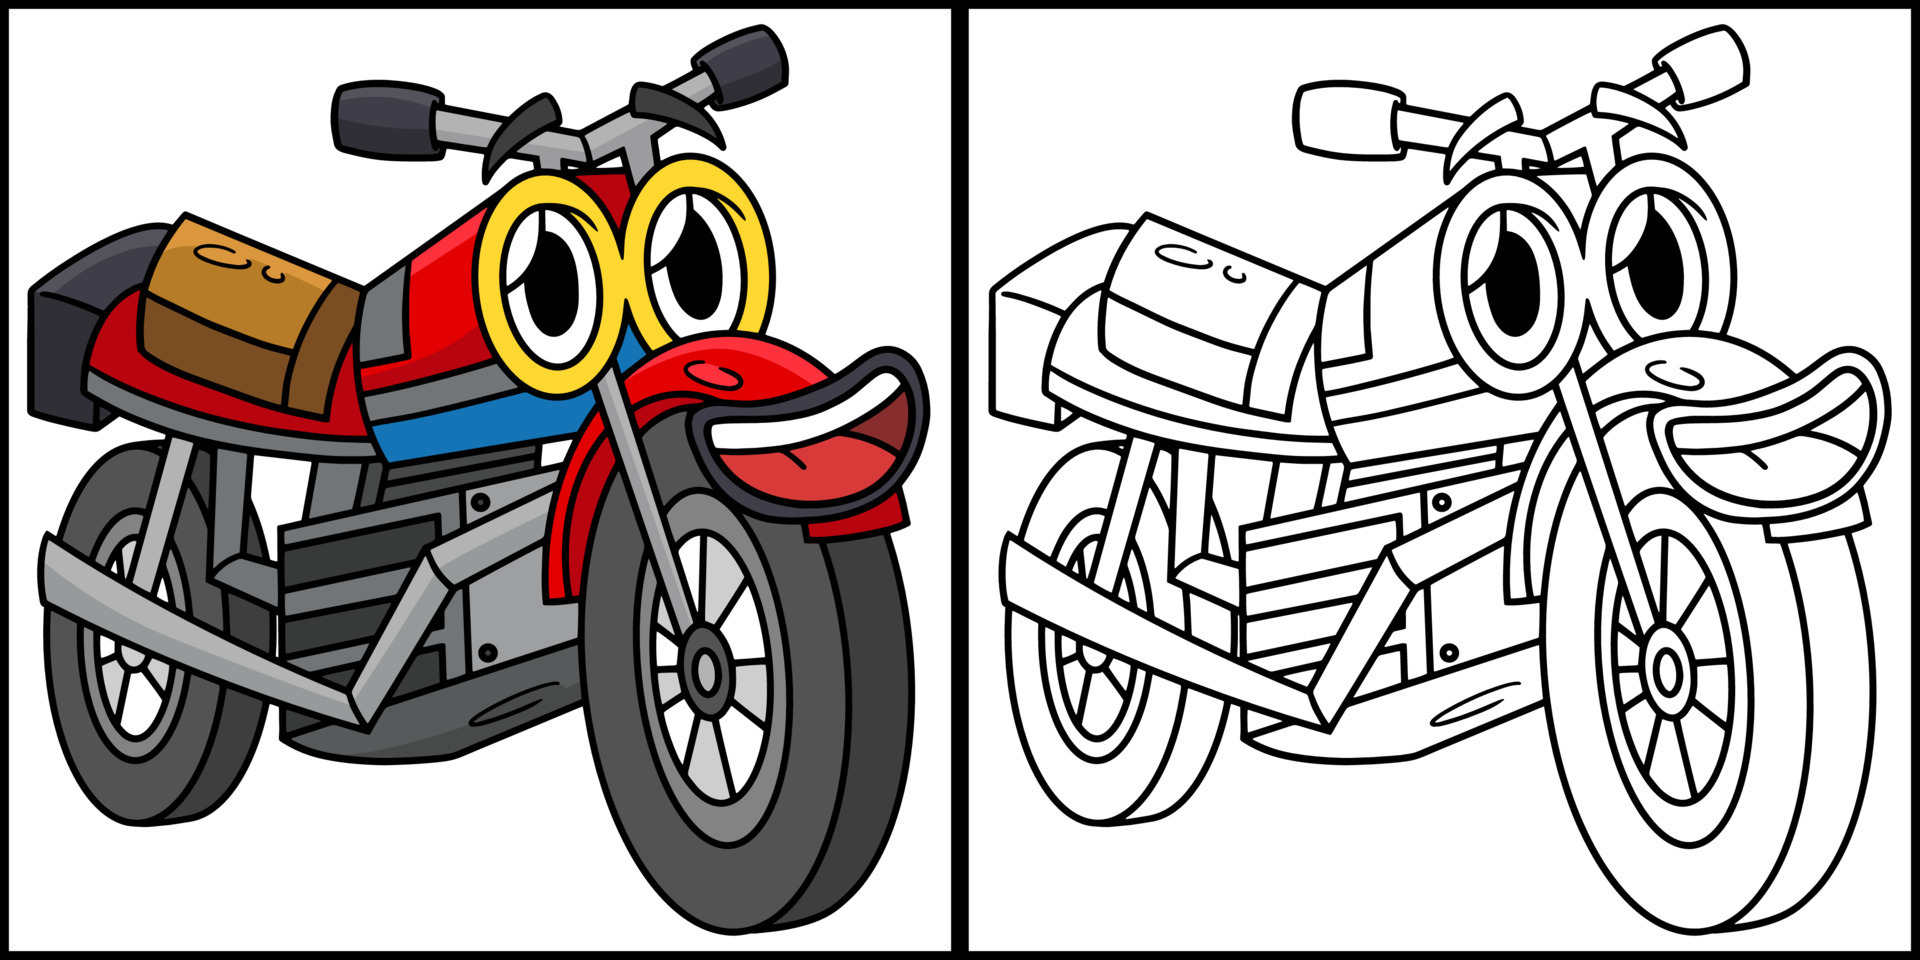 desenho de moto com carro de rosto para colorir 10002739 Vetor no Vecteezy